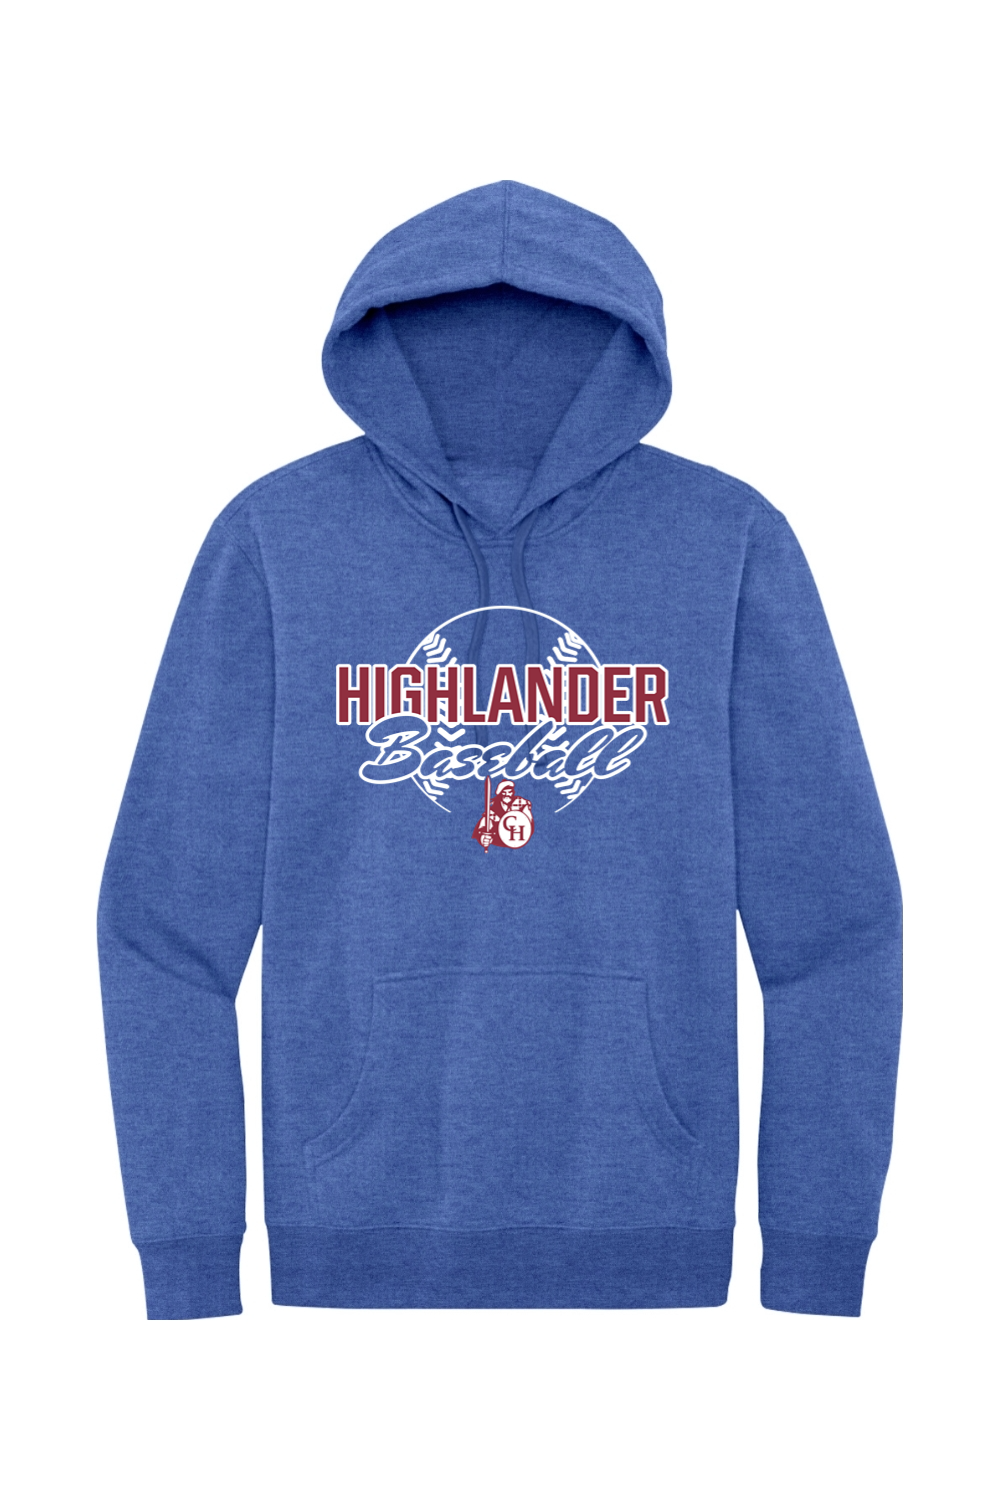 Highlander Baseball - Fleece Hoodie - Yinzylvania